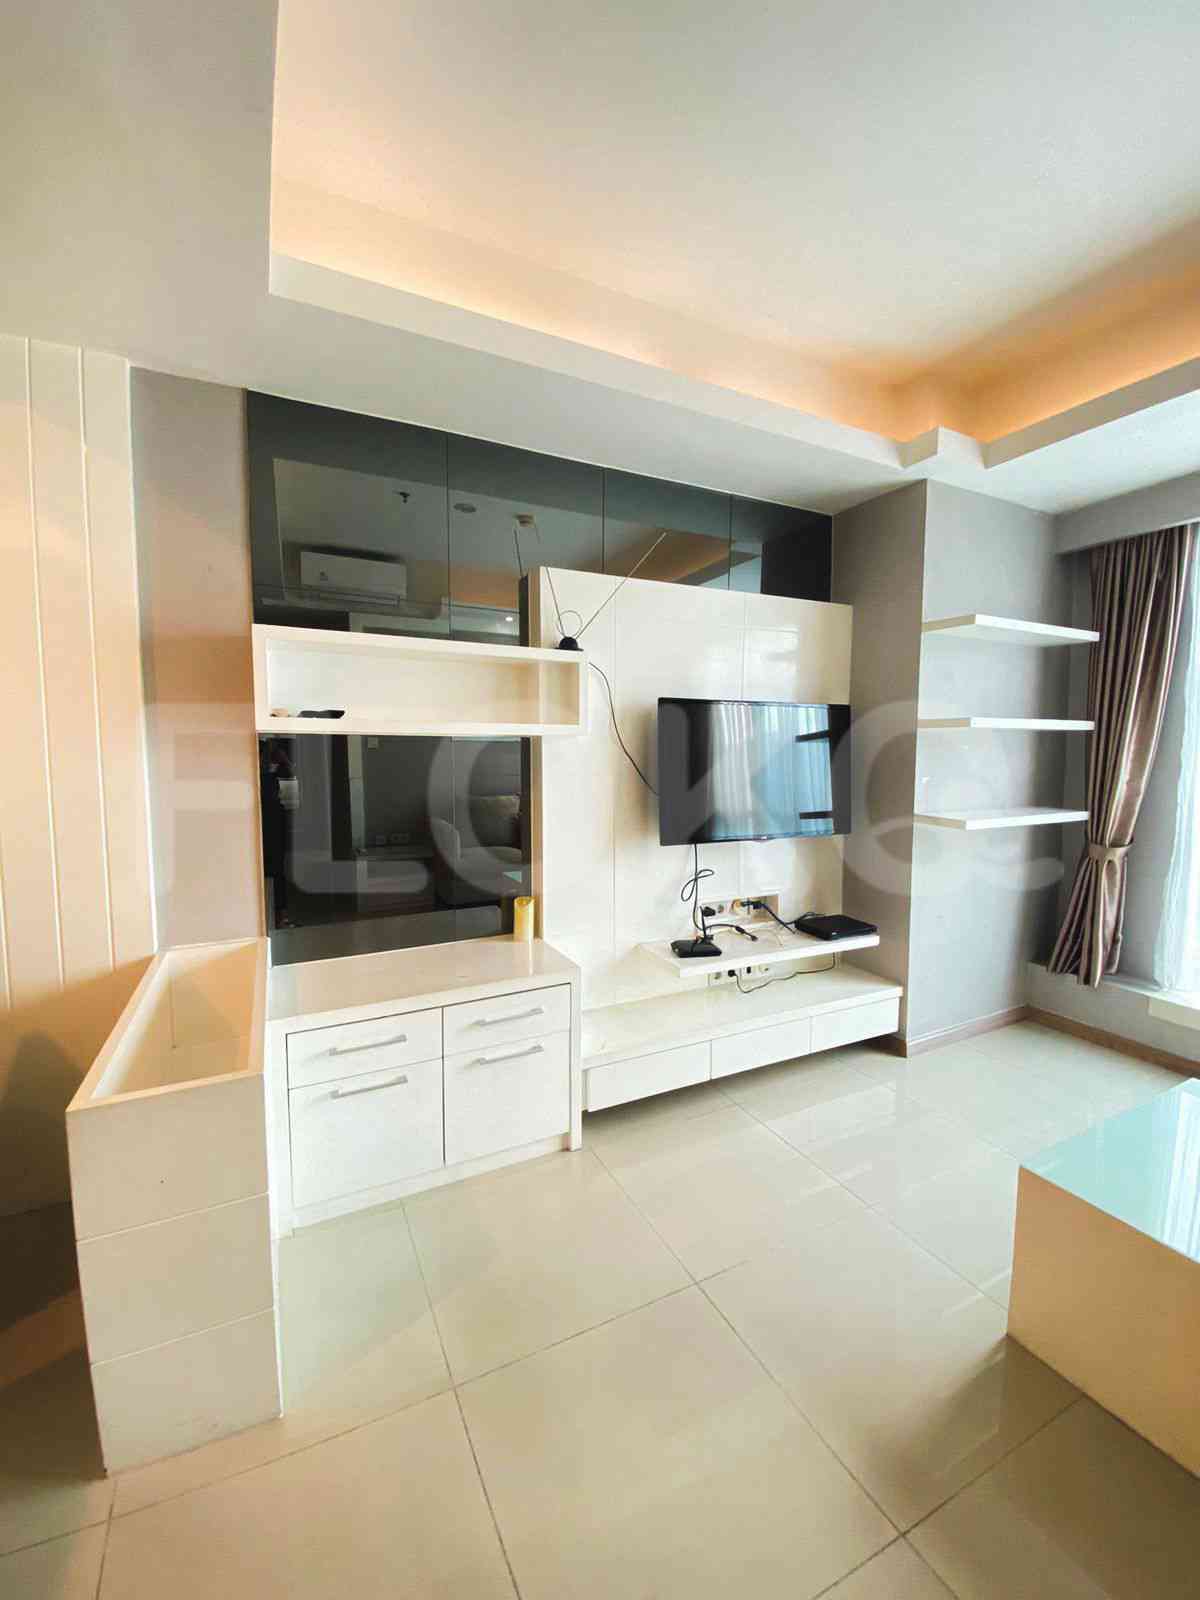 3 Bedroom on 17th Floor for Rent in Casa Grande - fte656 6